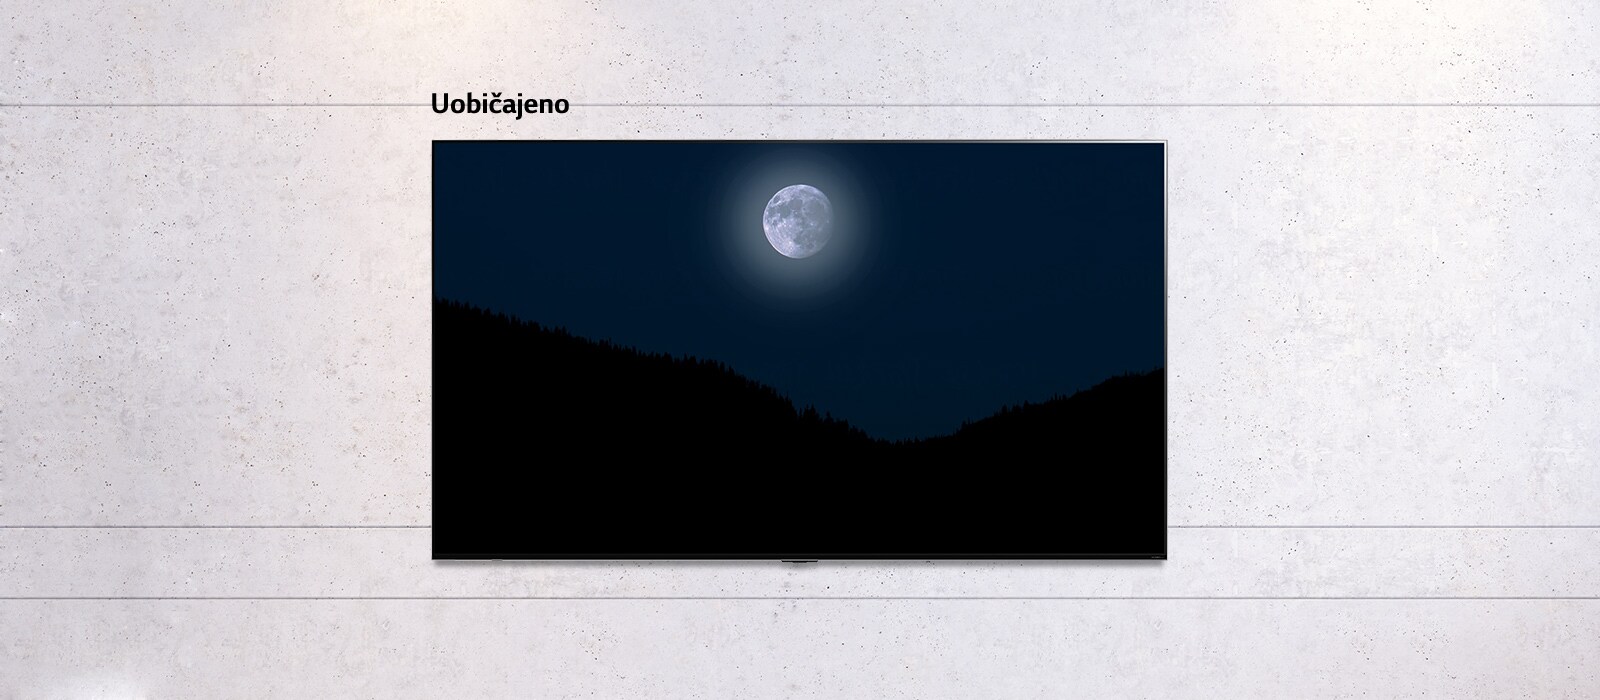 Pomična slika televizora montiranog na zid na kojem se prikazuje mračan prizor mjeseca iznad planina. Prizor se izmjenjuje na televizoru uobičajene veličine i televizoru LG QNED Mini LED s velikim zaslonom.